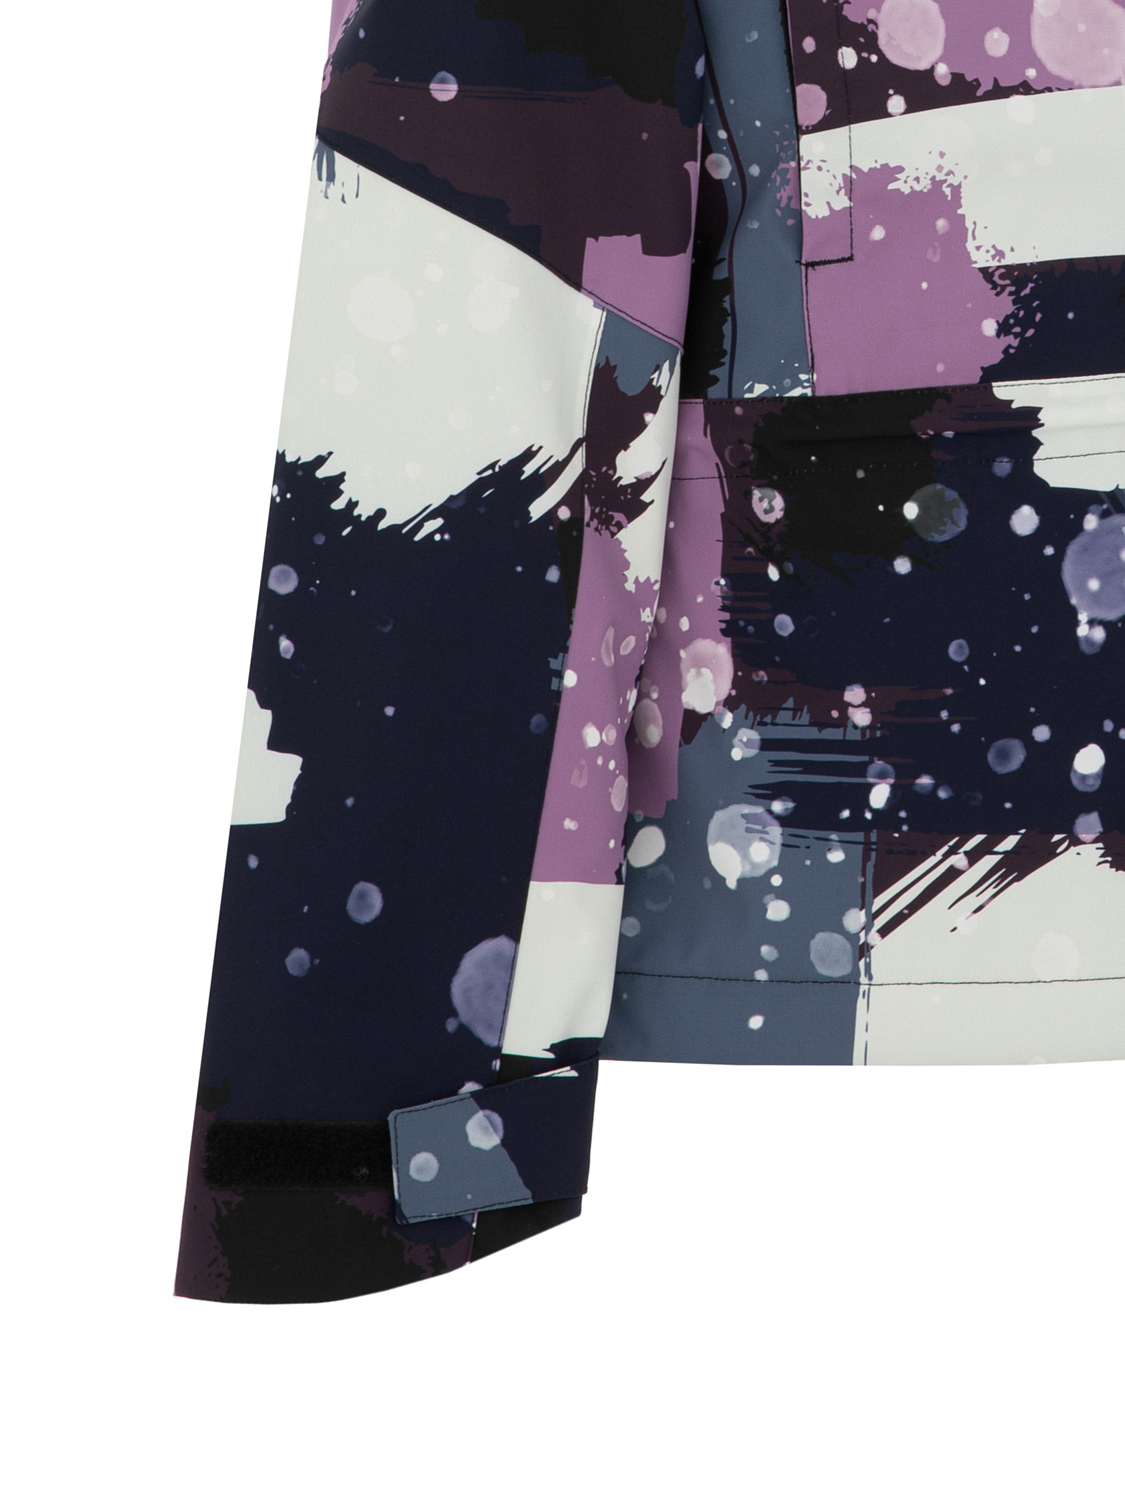 Куртка сноубордическая детская Rehall Loiza-R-Jr. Camo Abstract Lavender